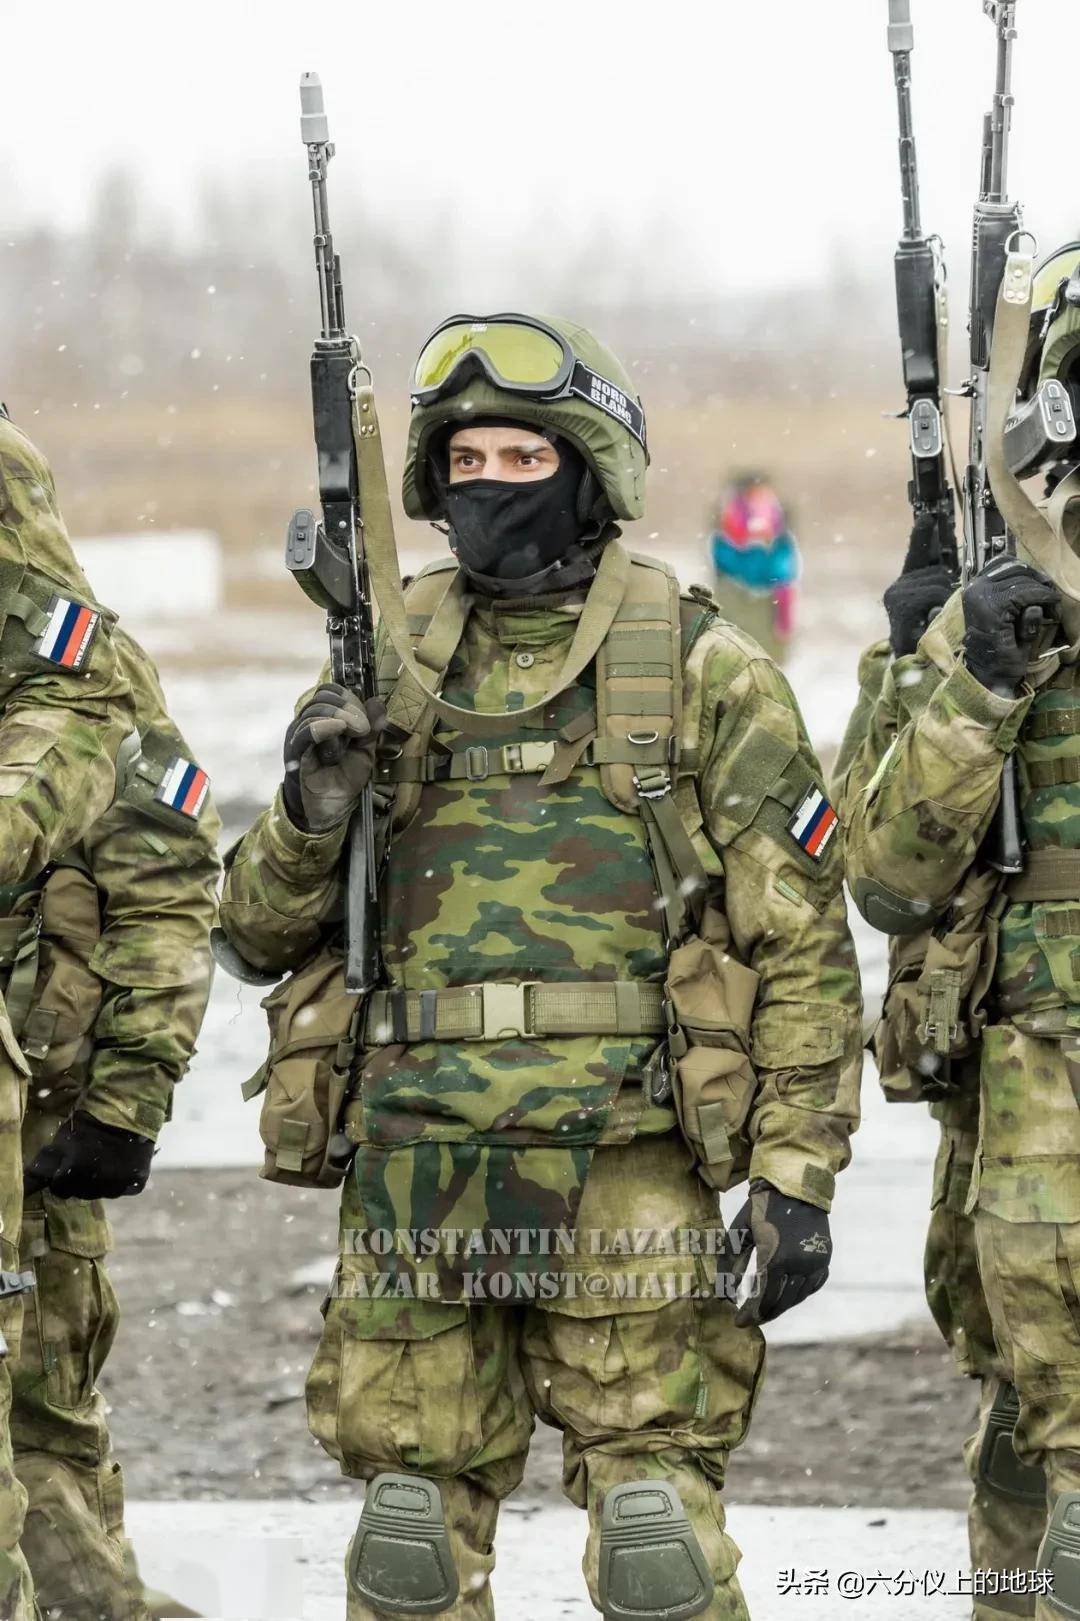 下图:2014年俄罗斯联邦内务部捷尔任斯基师摩托化内务部队演习的另一